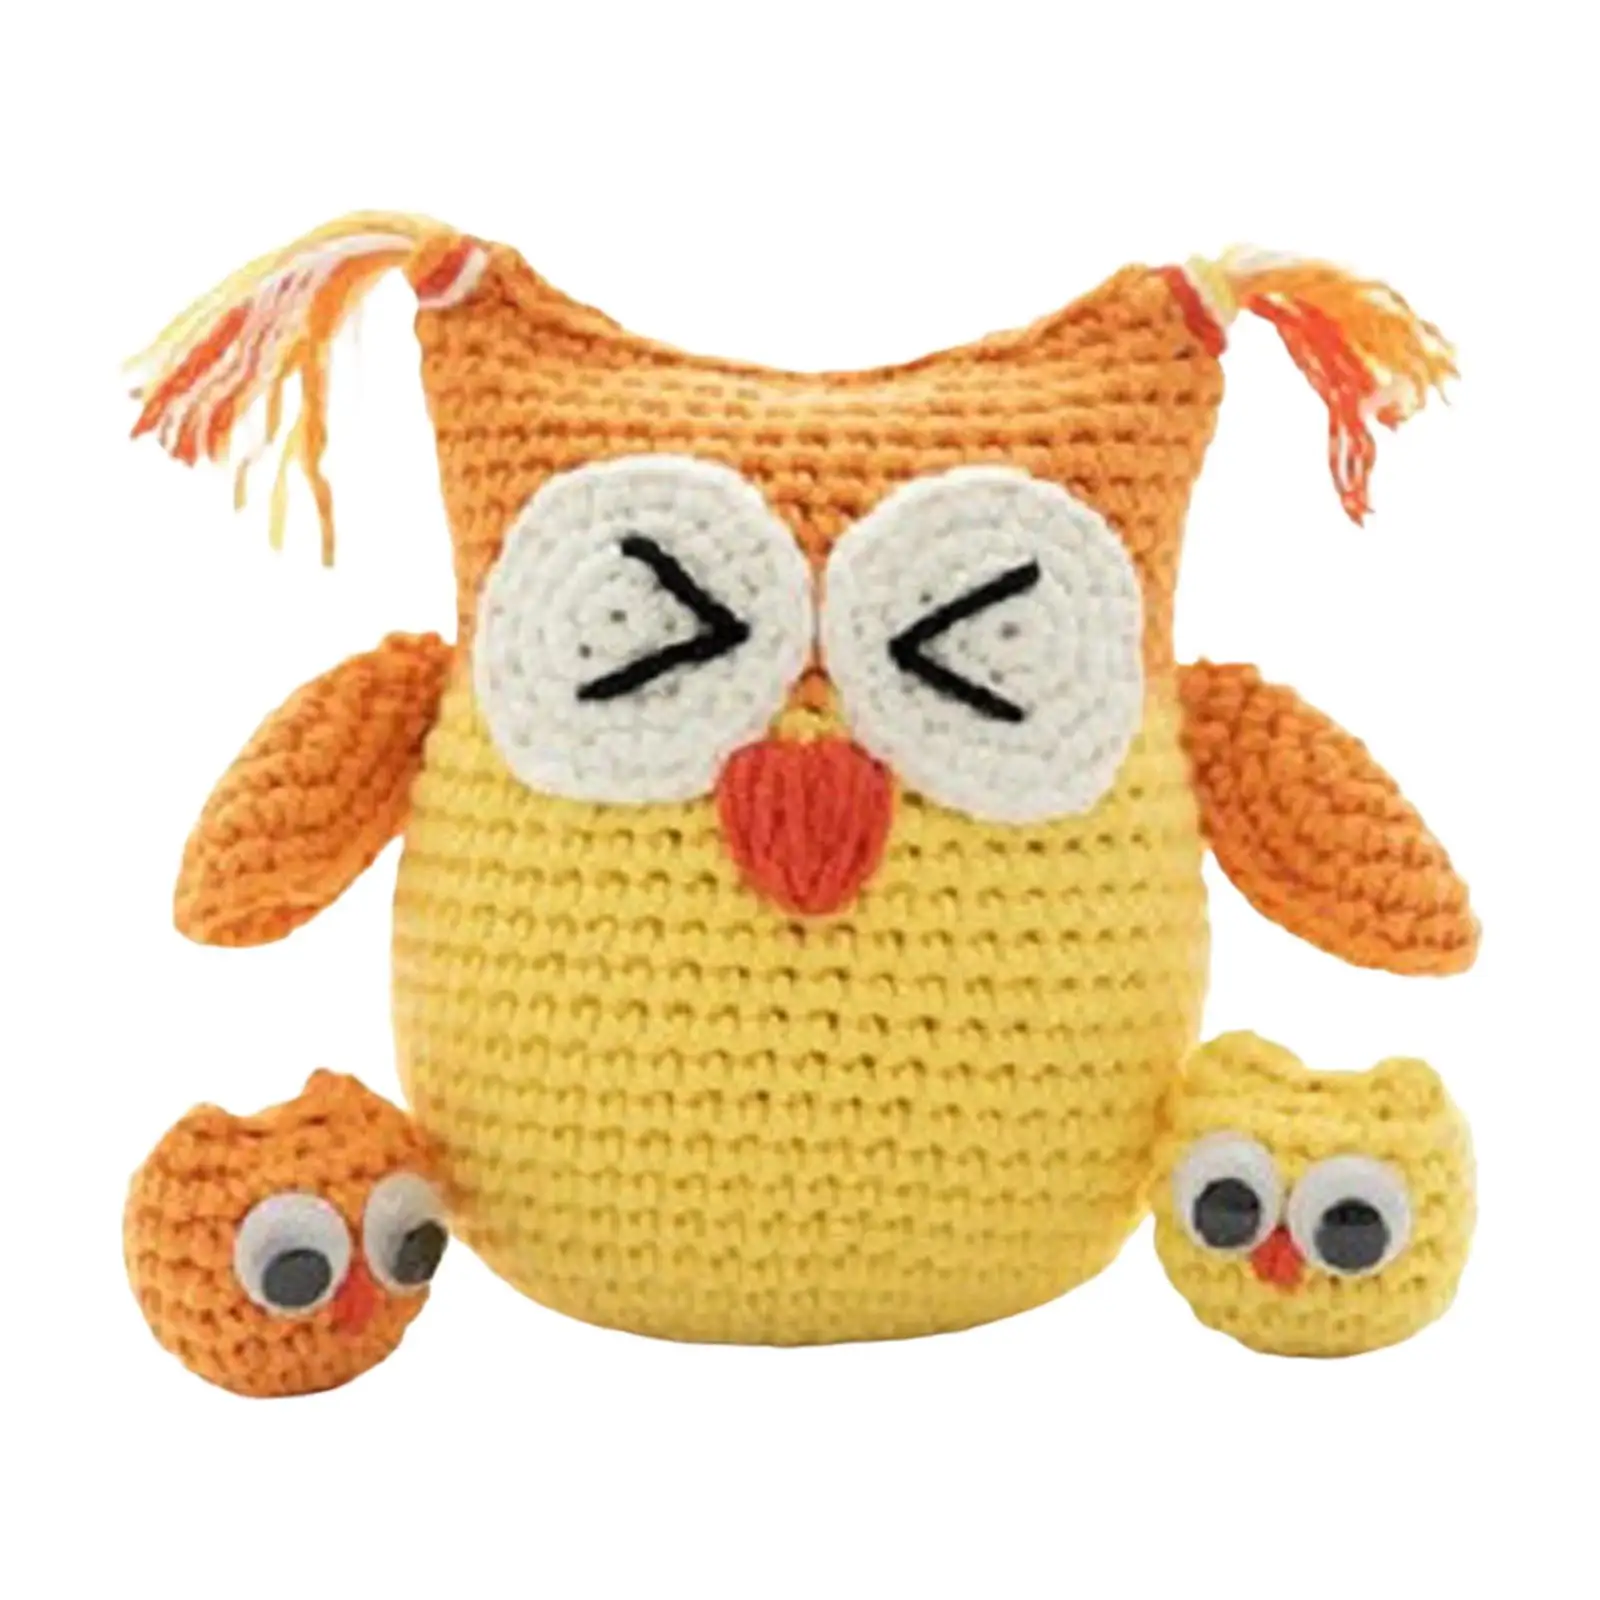 Handmade Crochet Kit Needlework Doll Crochet Kit for Beginners for Adults Beginner